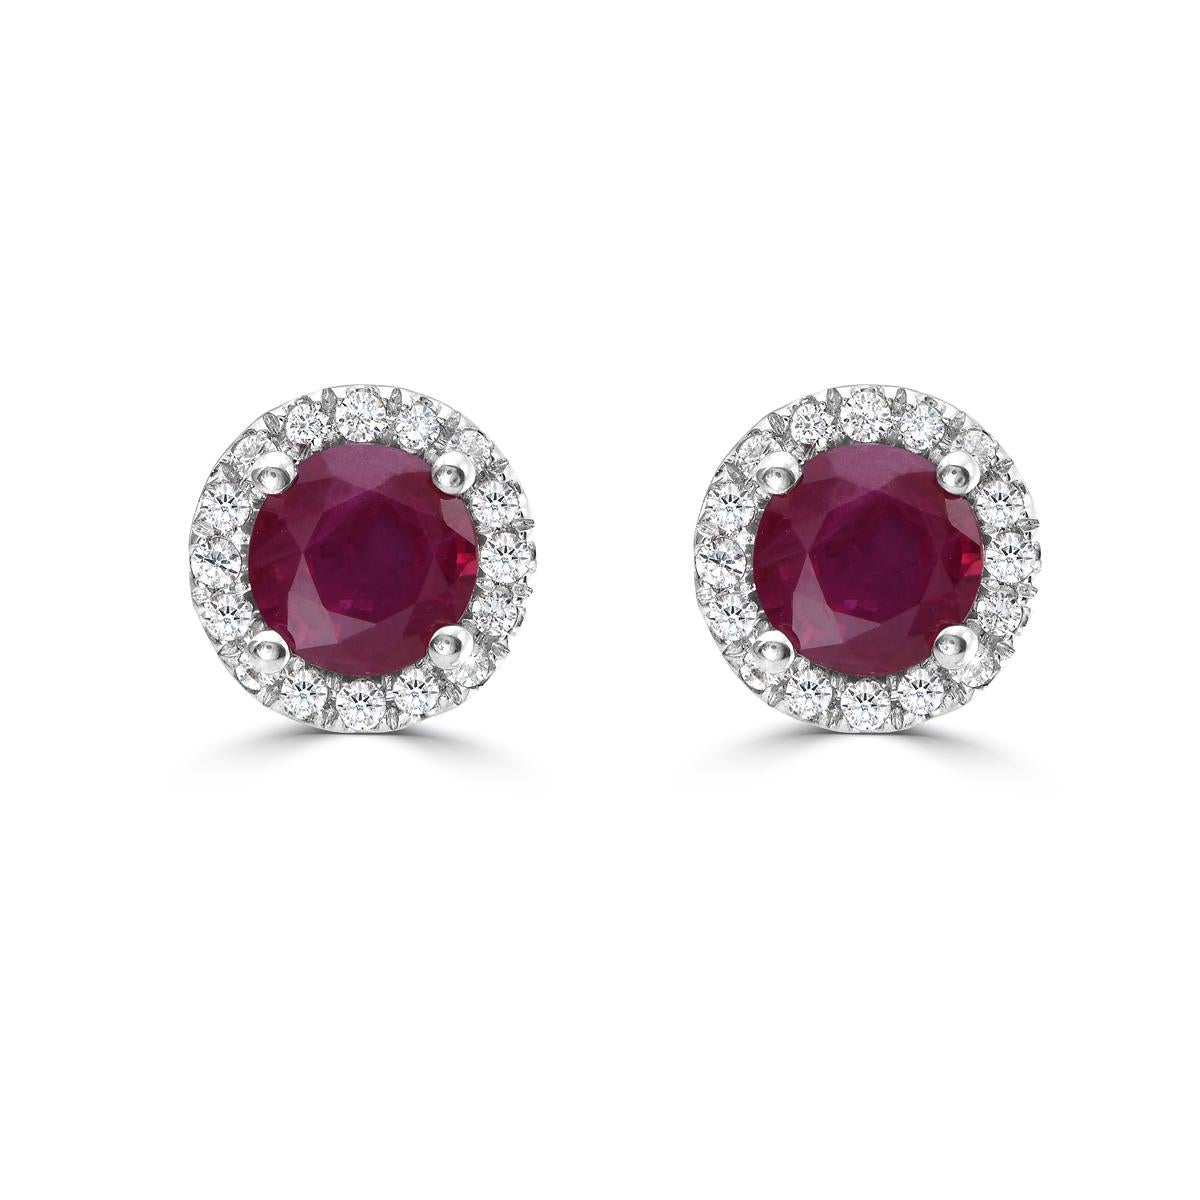 Werten Sie Ihren Look mit unseren exquisiten Rubin- und Diamant-Halo-Martini-Ohrsteckern auf. Diese Rubin-Ohrstecker sind die perfekte Mischung aus Luxus und Raffinesse. Sie sind mit atemberaubenden Diamanten und glänzendem Gold verziert und